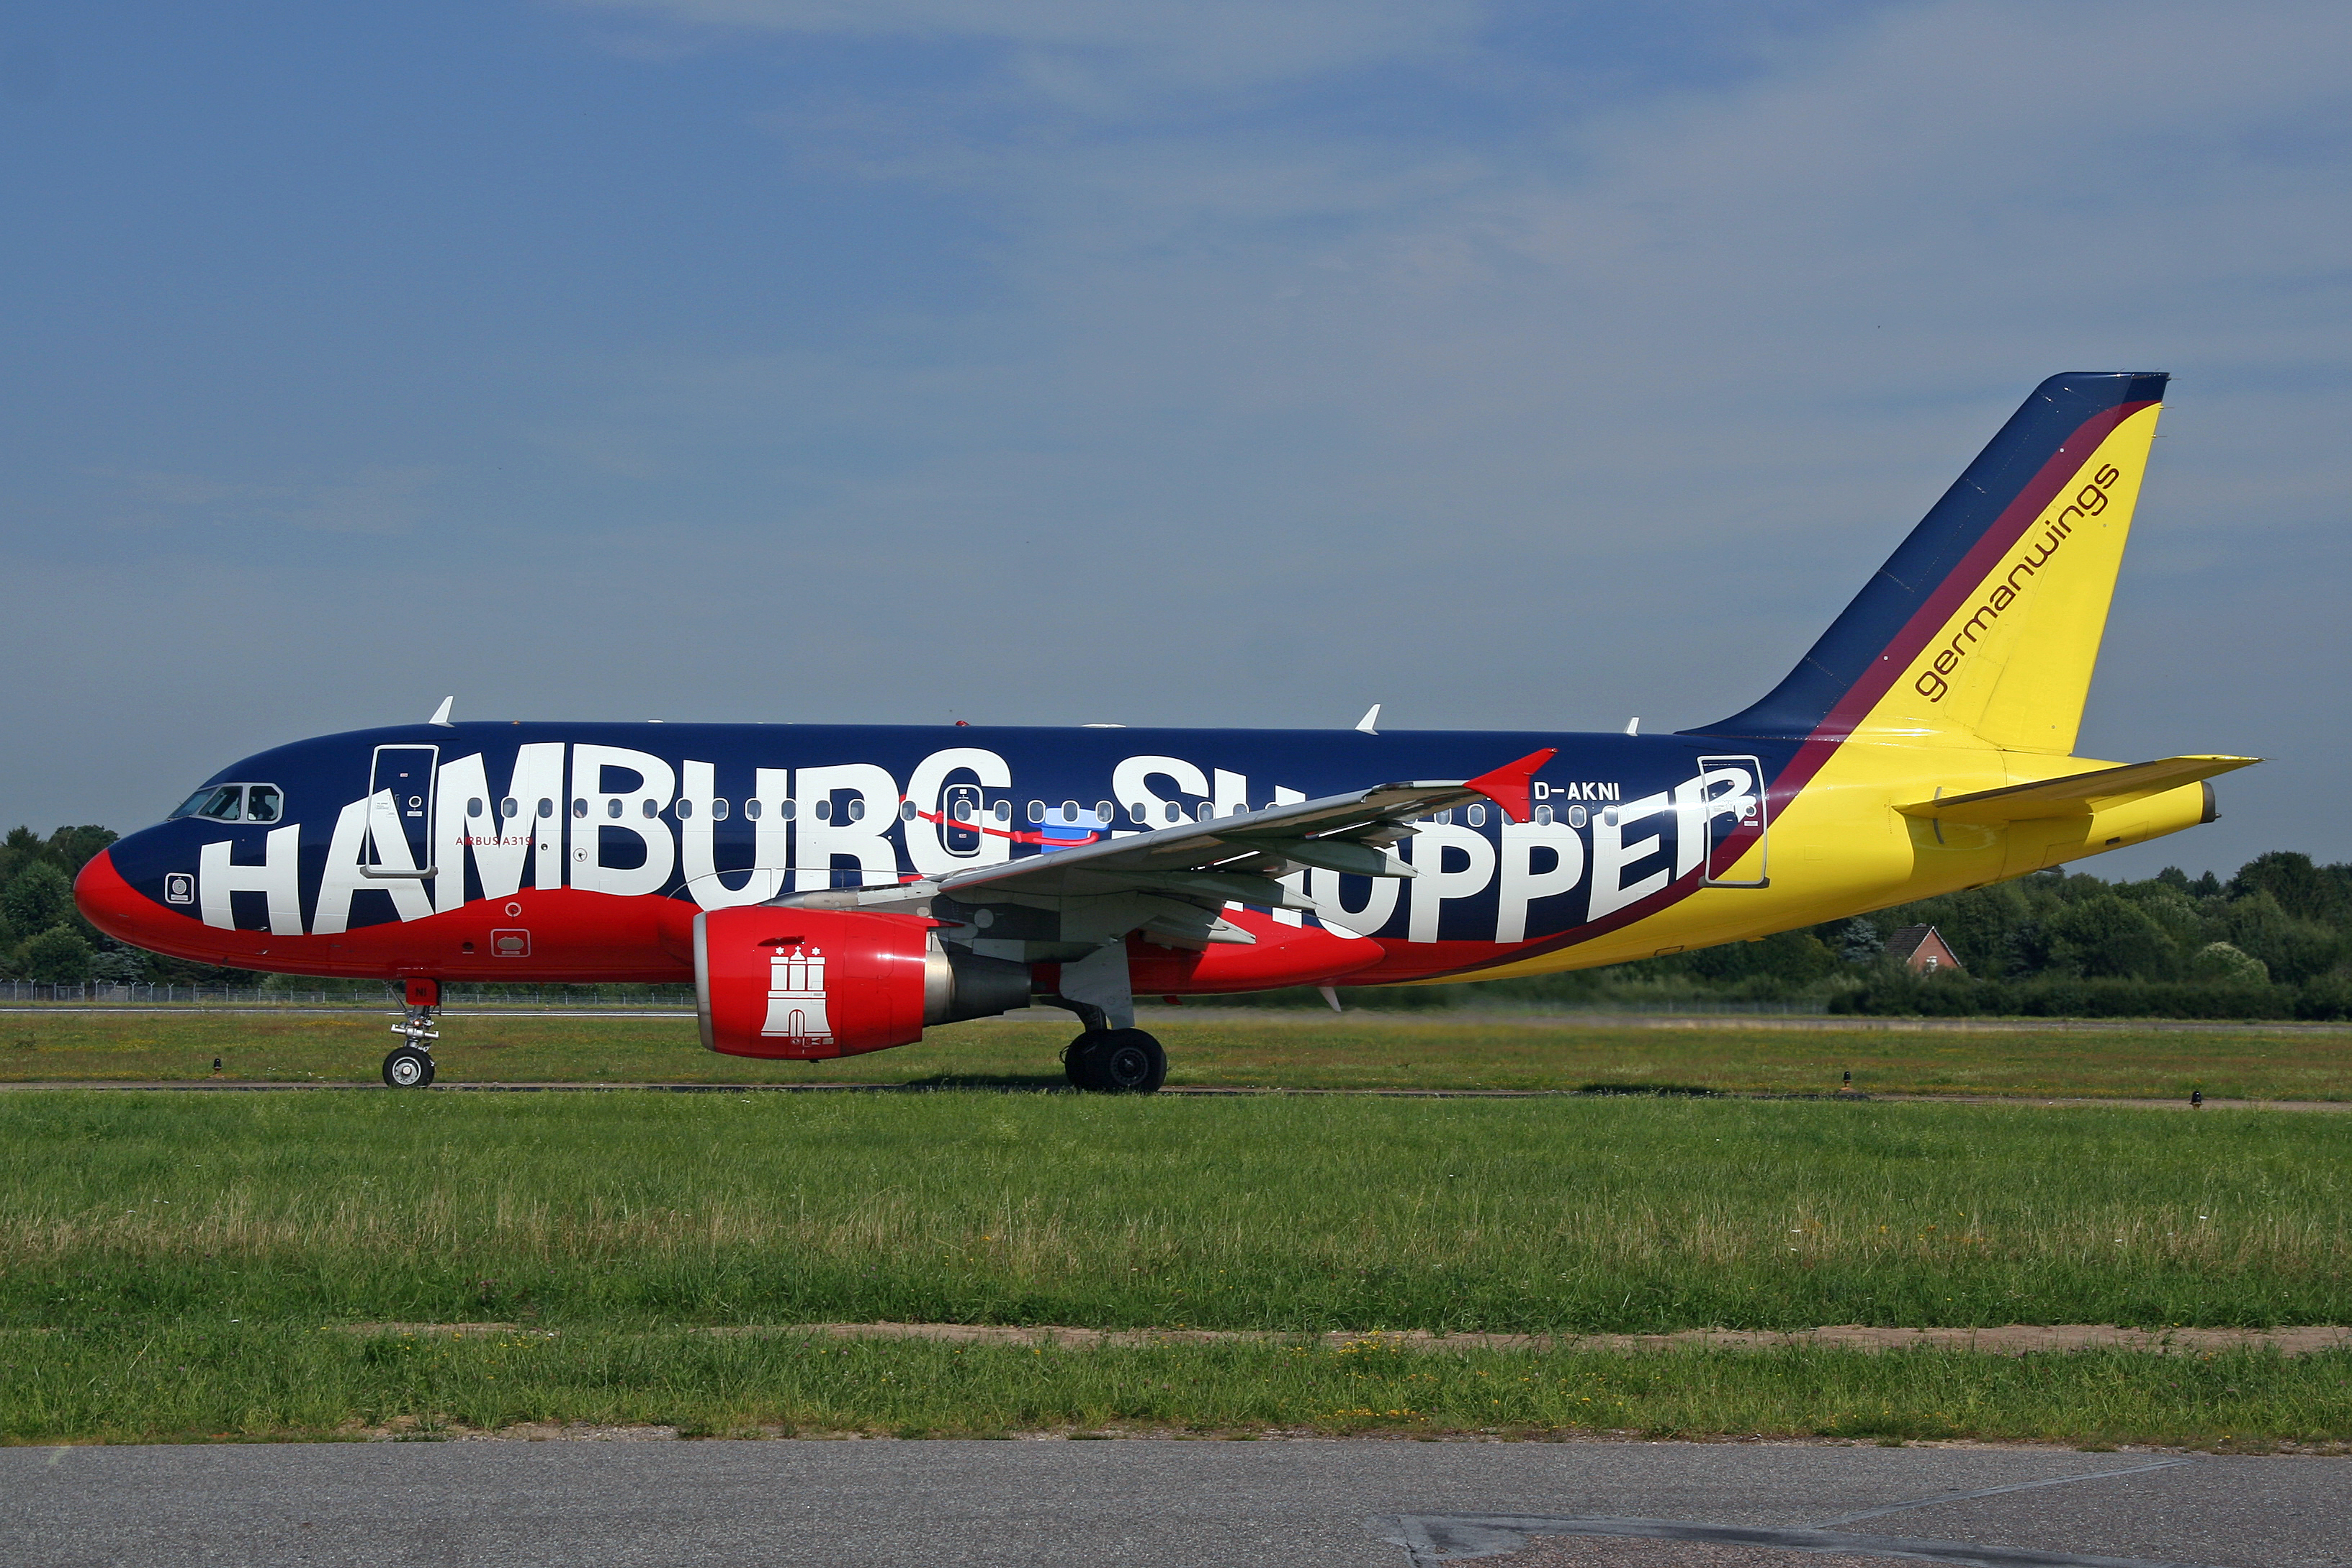 Airbus A319 Germanwings D-AKNI